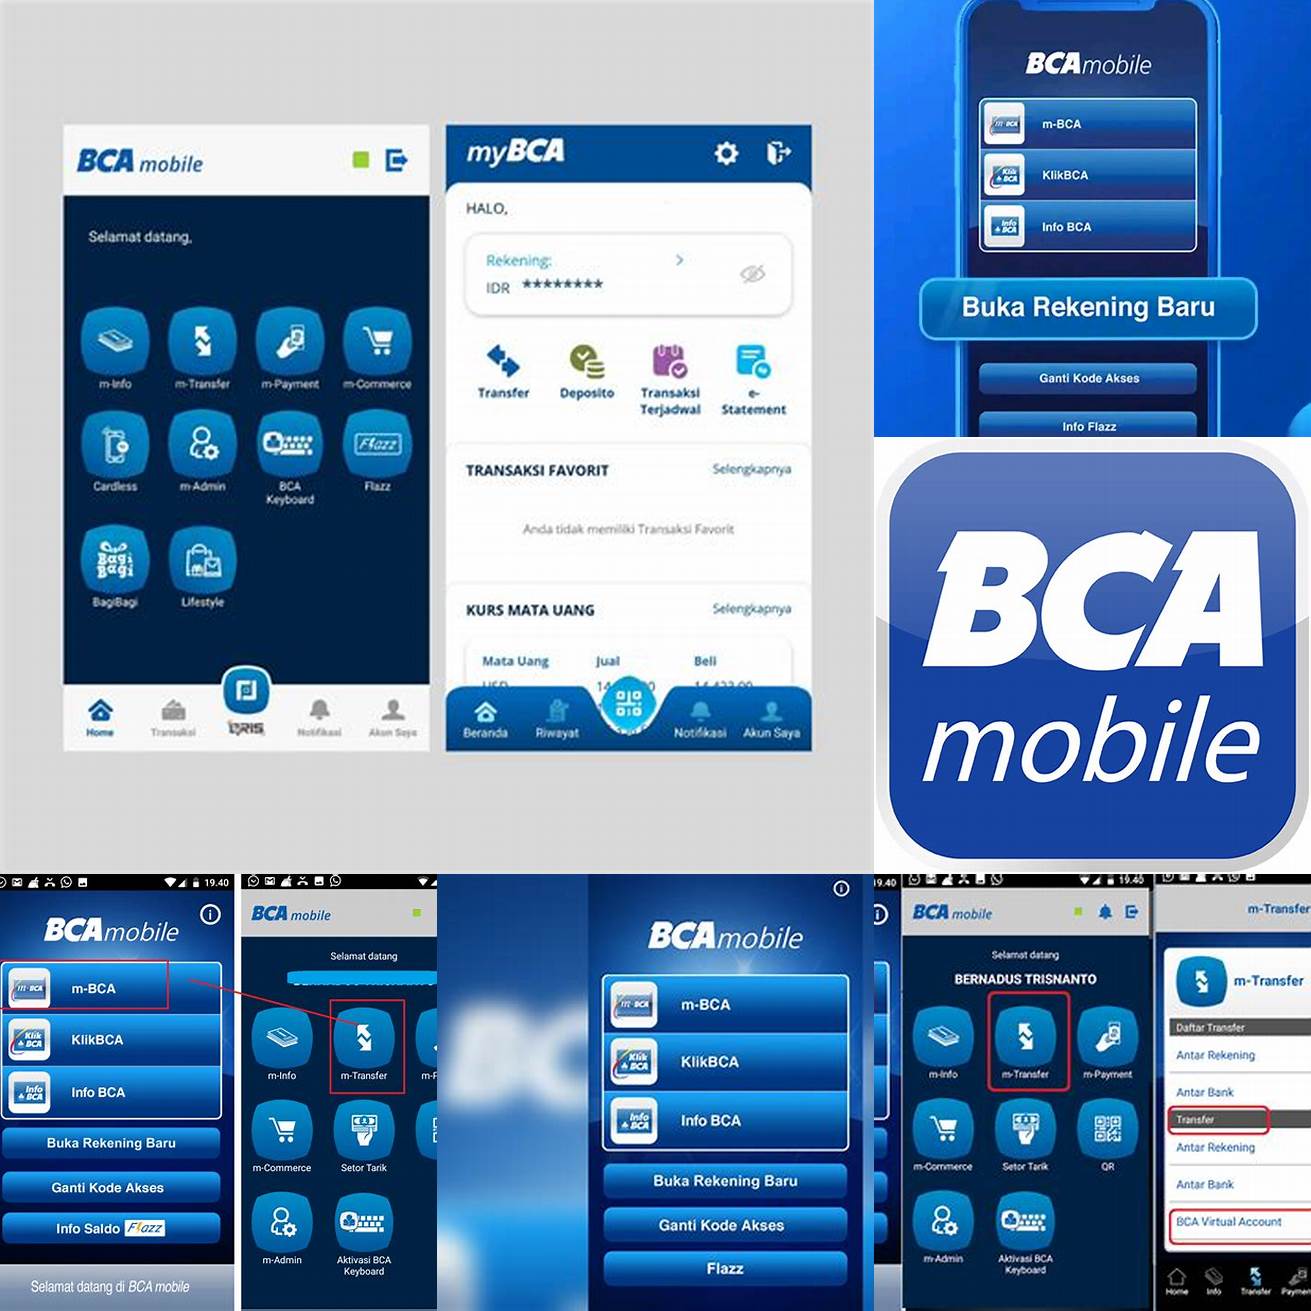 Download aplikasi mobile banking BCA di App Store atau Google Play Store